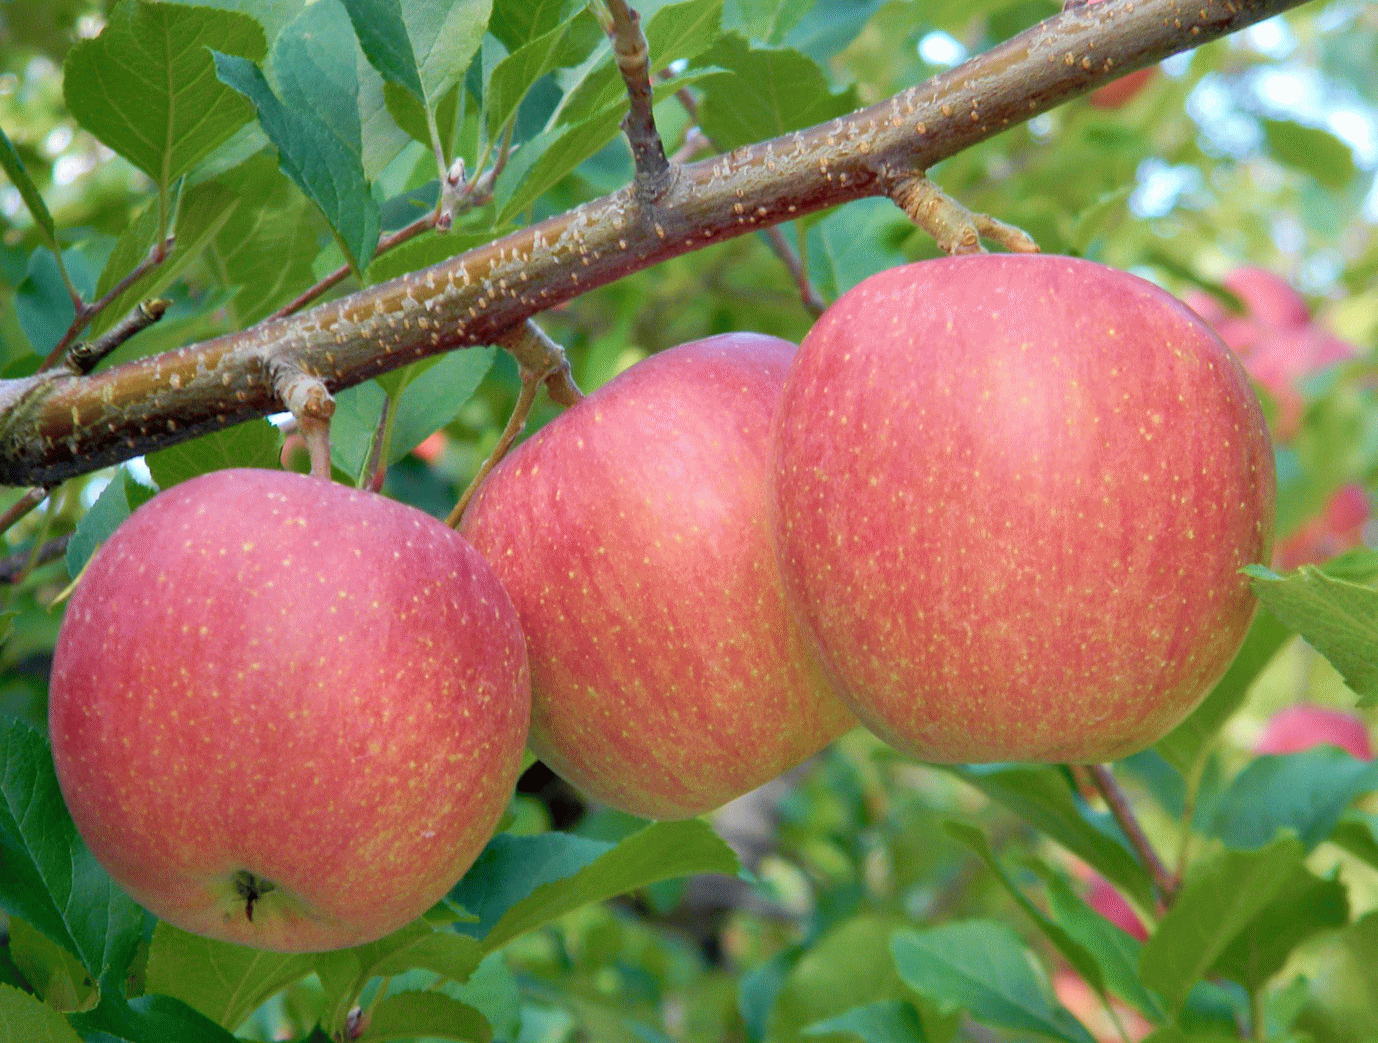 森の中の果樹園のリンゴ　ようこそ、森の中の果樹園へ　ここは岩木山麓、屋根のない果物屋さん